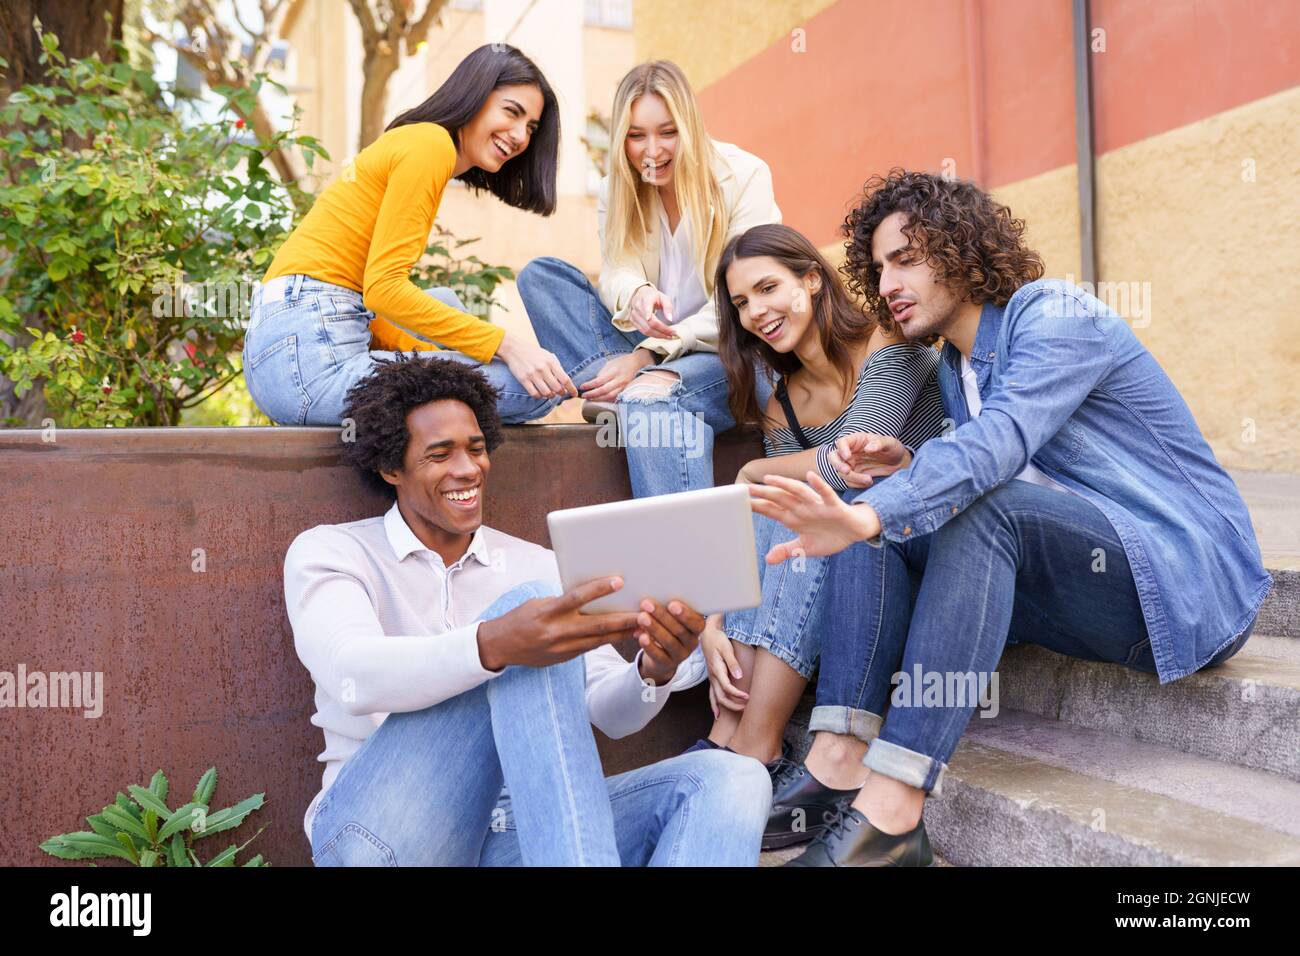 Groupe multiethnique de jeunes qui regardent une tablette numérique à l'extérieur en milieu urbain. Banque D'Images